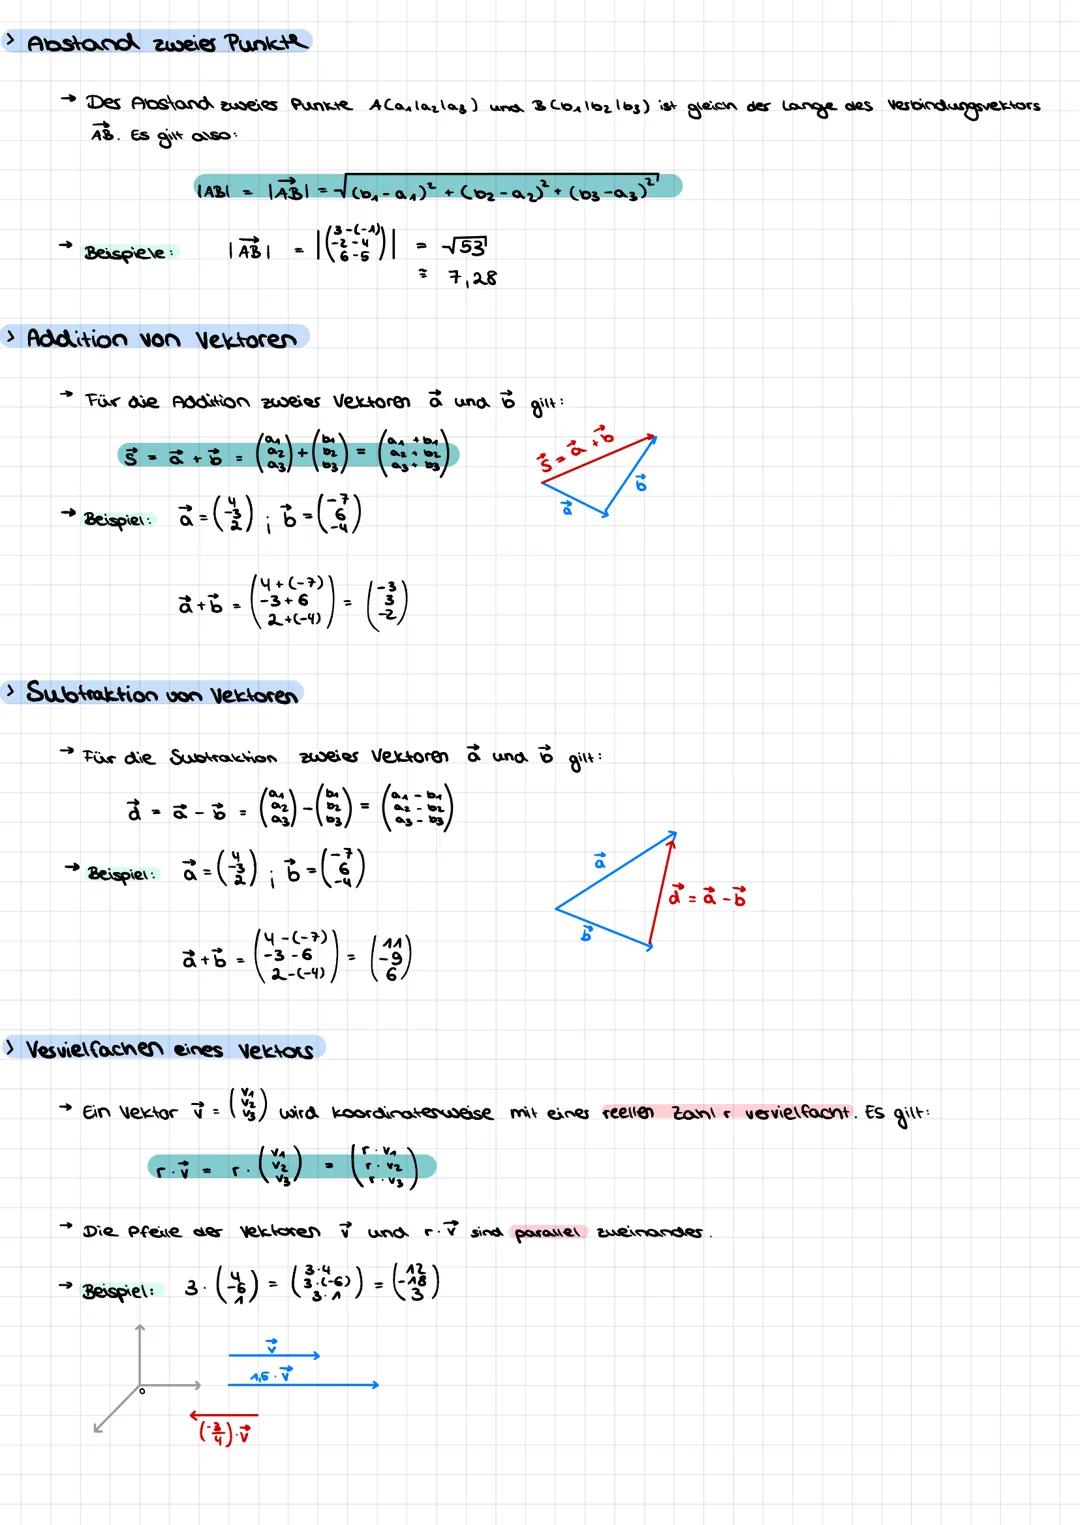 > Definition
→ (1) Ein Vektor mit drei koordinaten ist ein geordnetes zamientripes, das coir als Spalte schreiben.
kleinen Buchstaben und ei